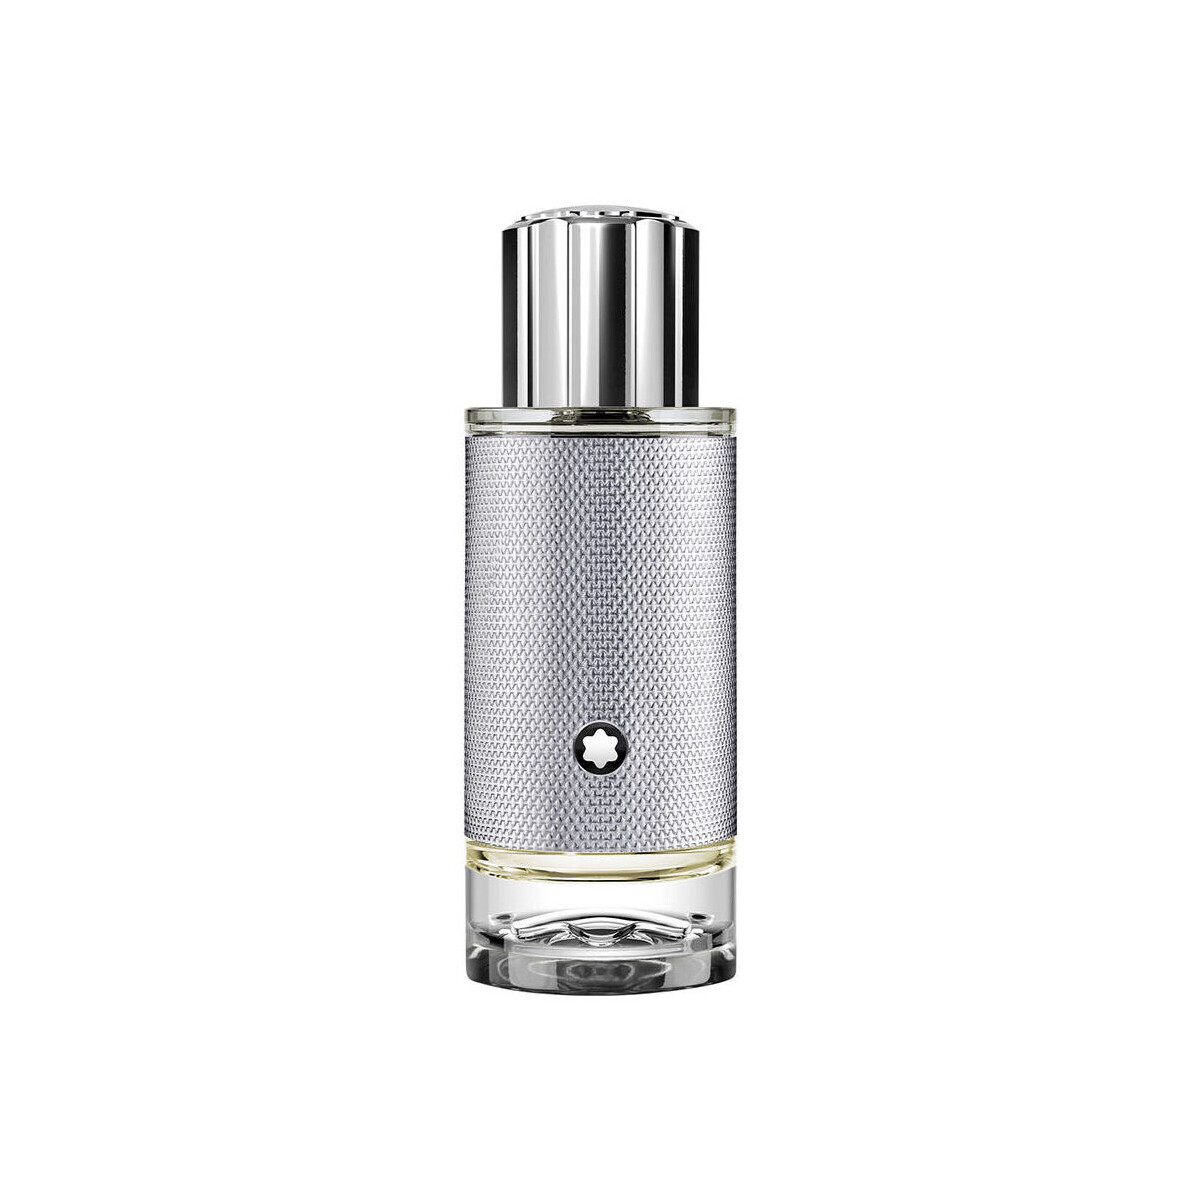 Beauty Eau de parfum  Montblanc Explorer Platinum Edp Vapo 